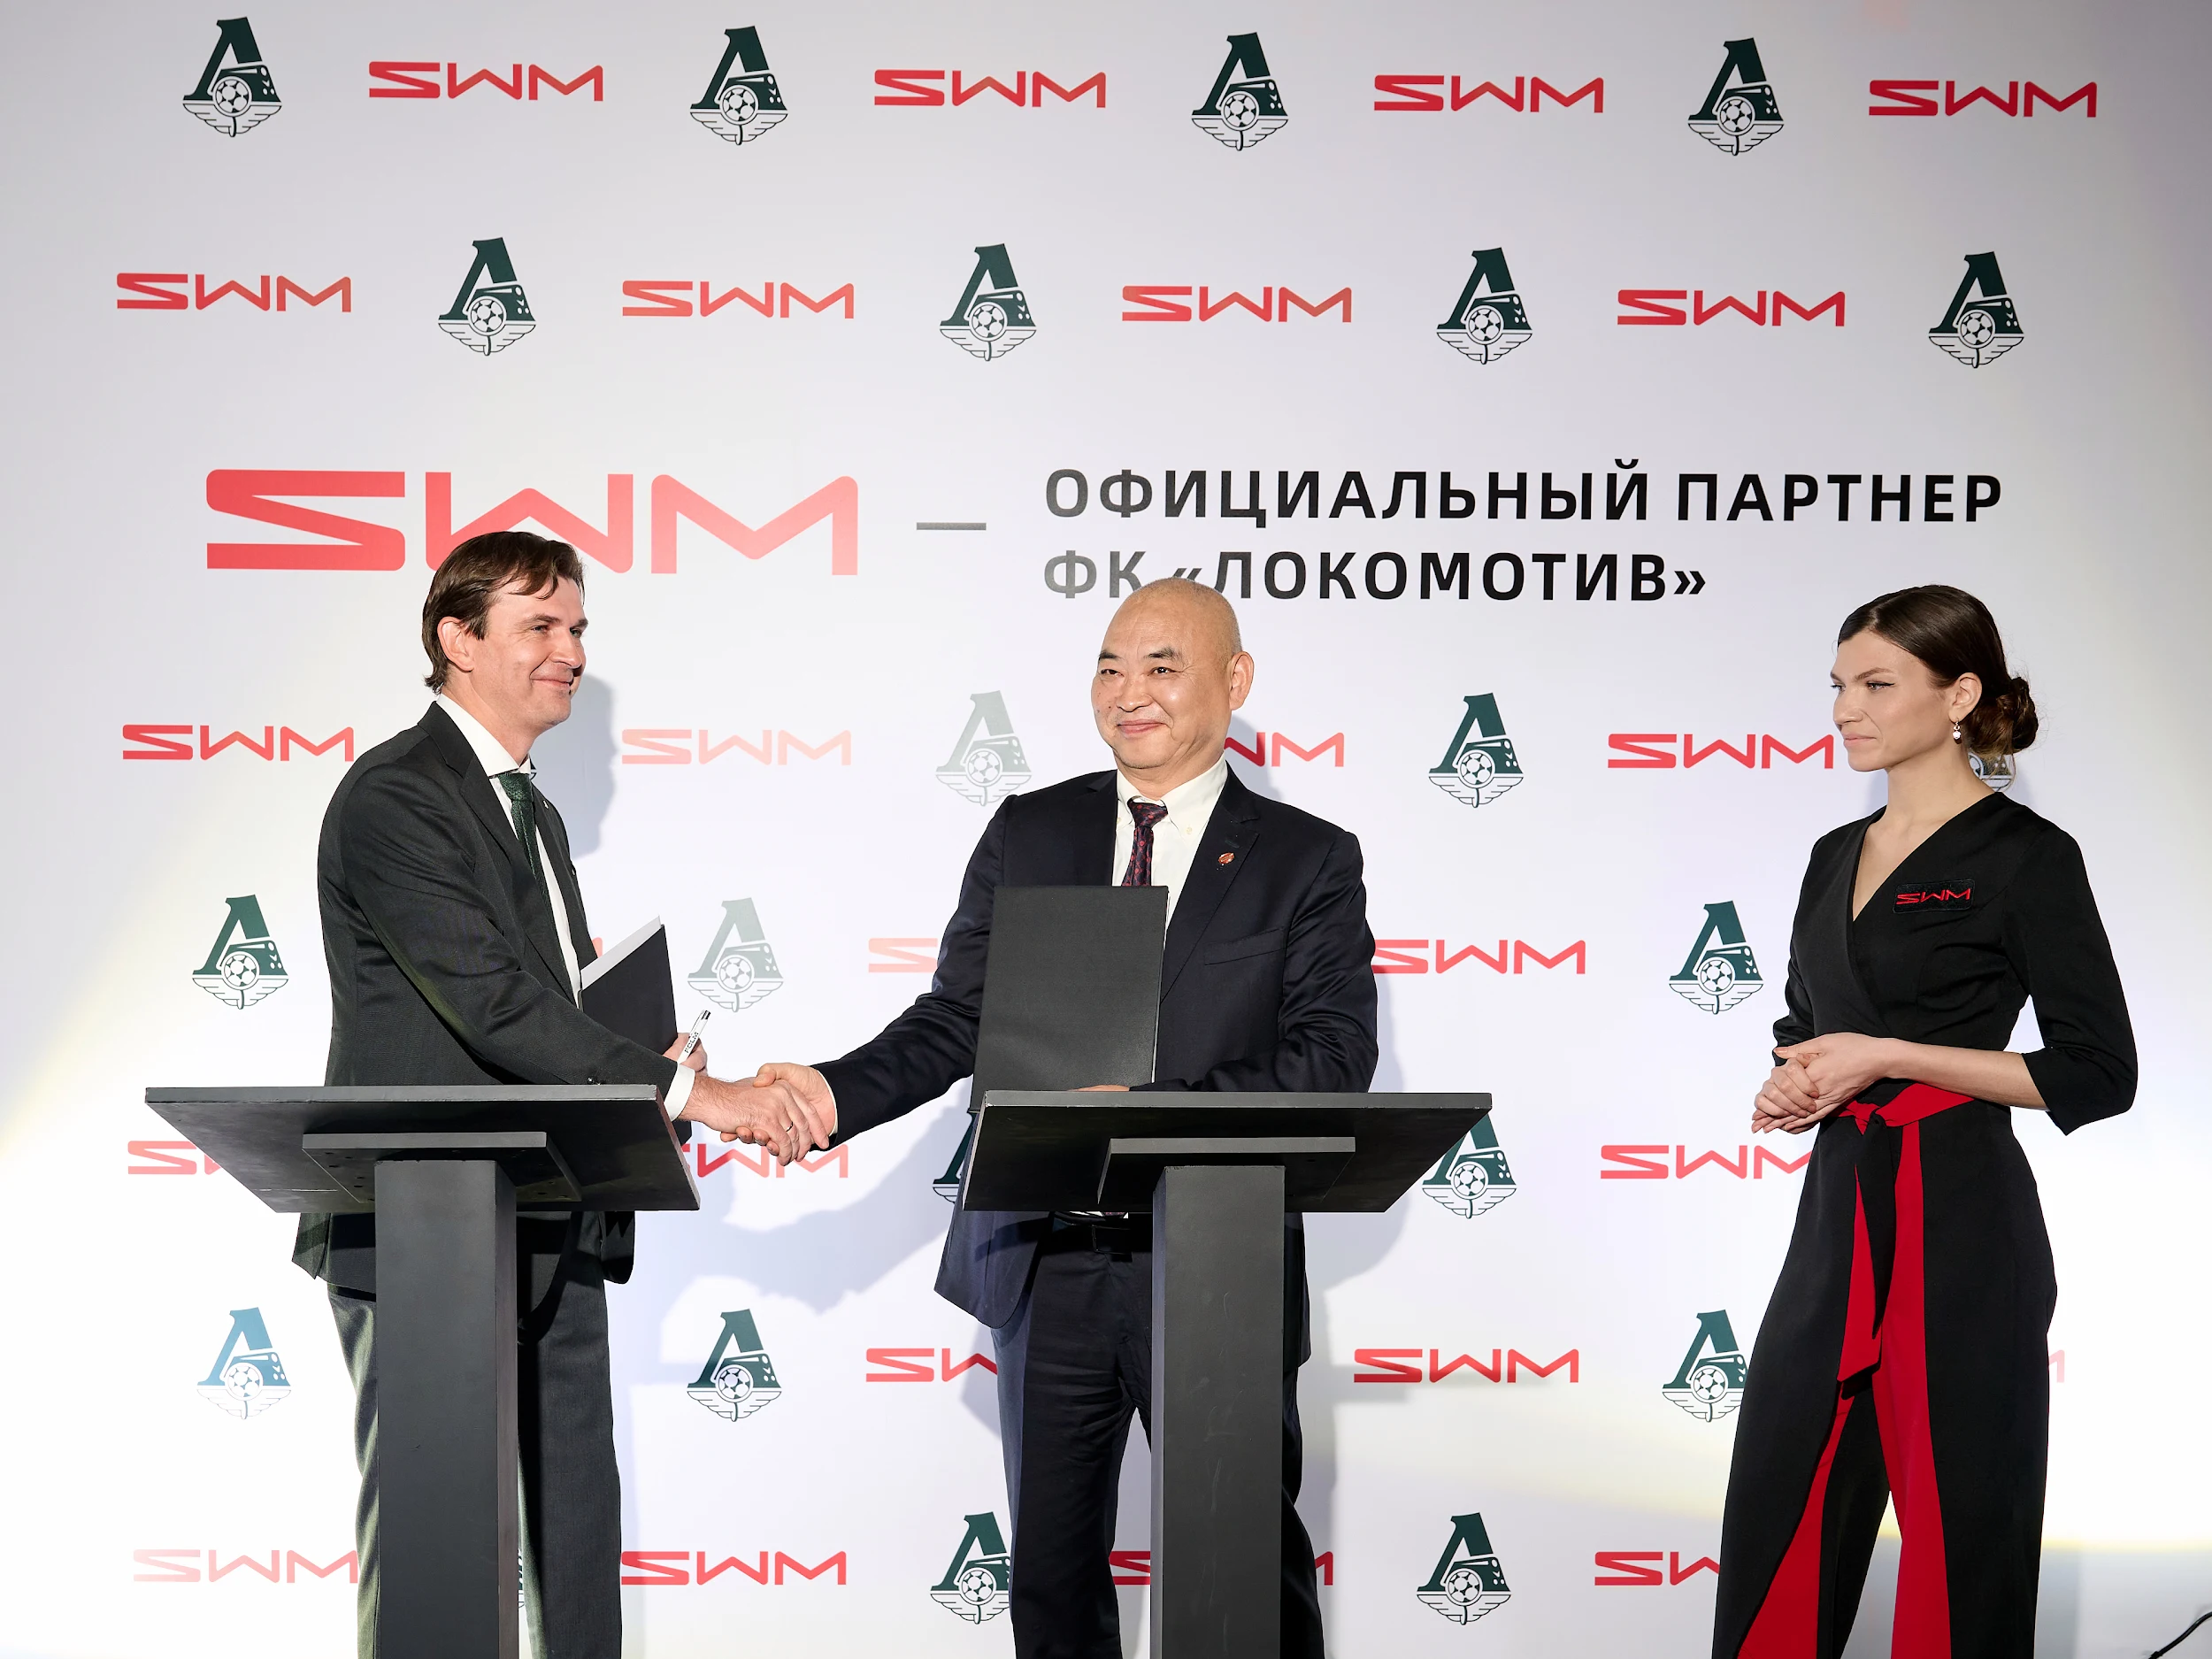 SWM Motors подписала договор о партнерстве с ФК «Локомотив»